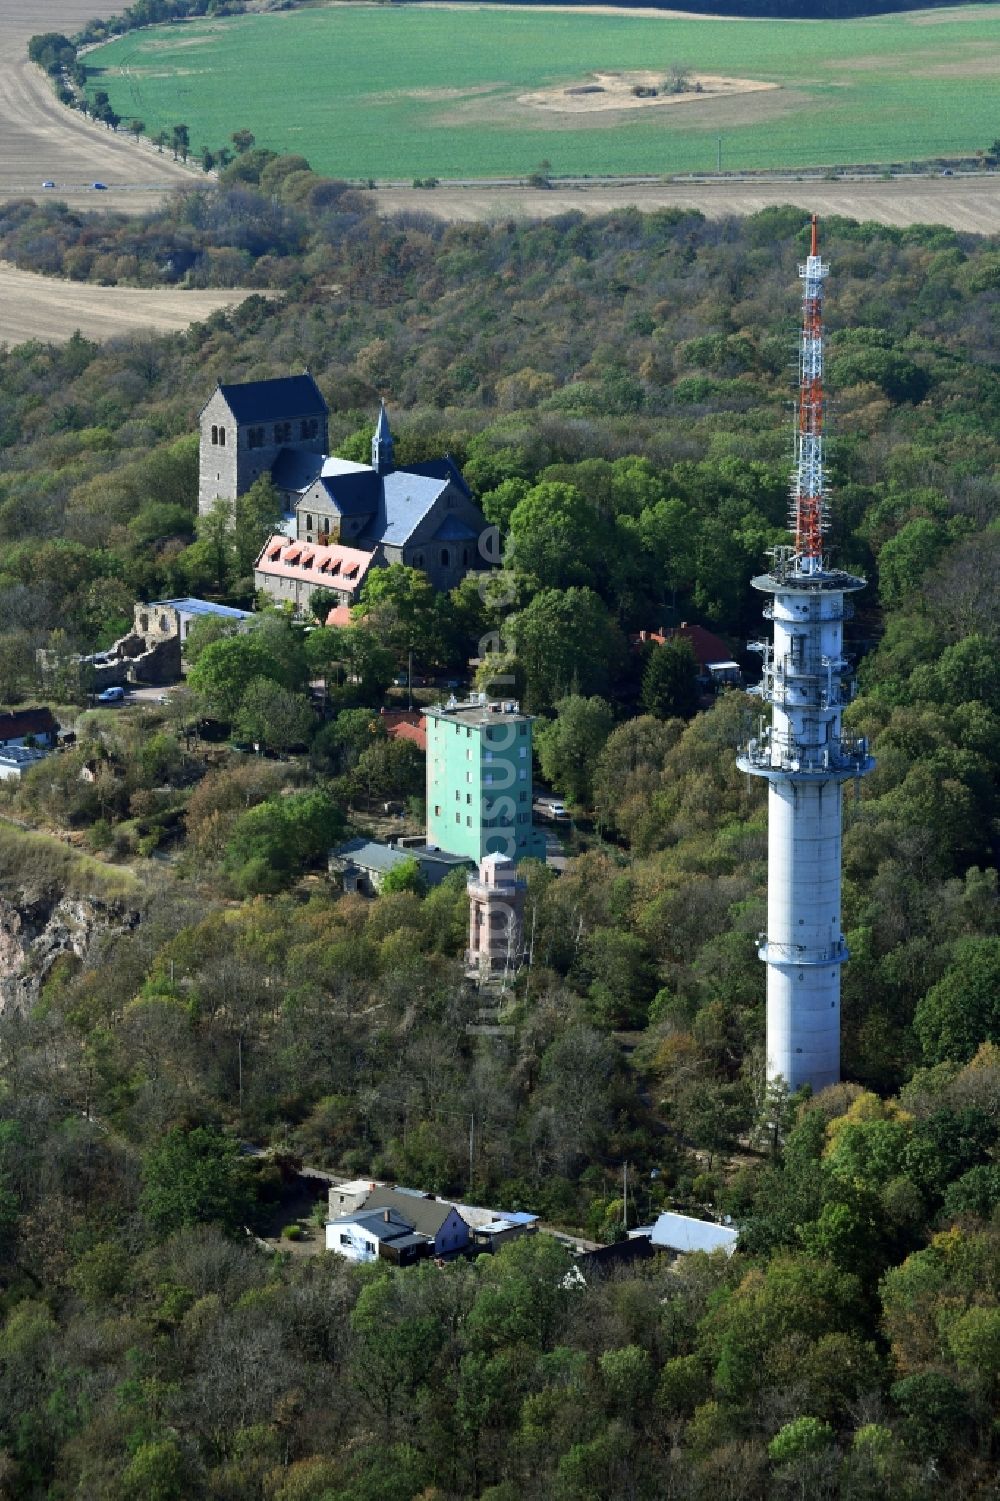 Petersberg von oben - Funkturm und Sendeanlage auf der Kuppe des Bergmassives Petersberg in Petersberg im Bundesland Sachsen-Anhalt, Deutschland